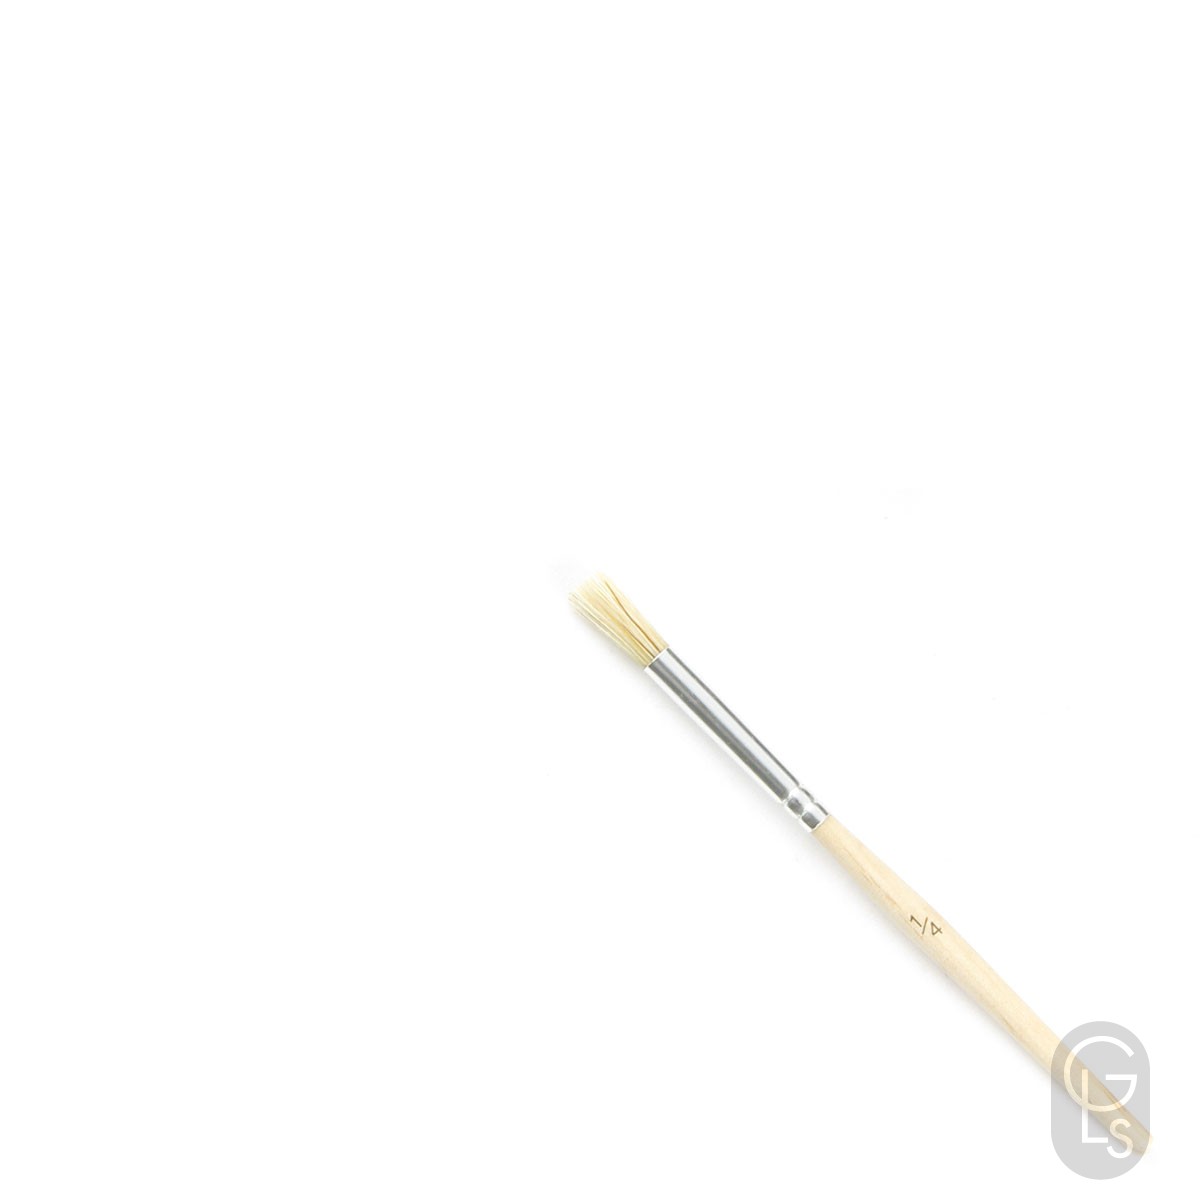 White Bristle Stencil Brush - 1/4"